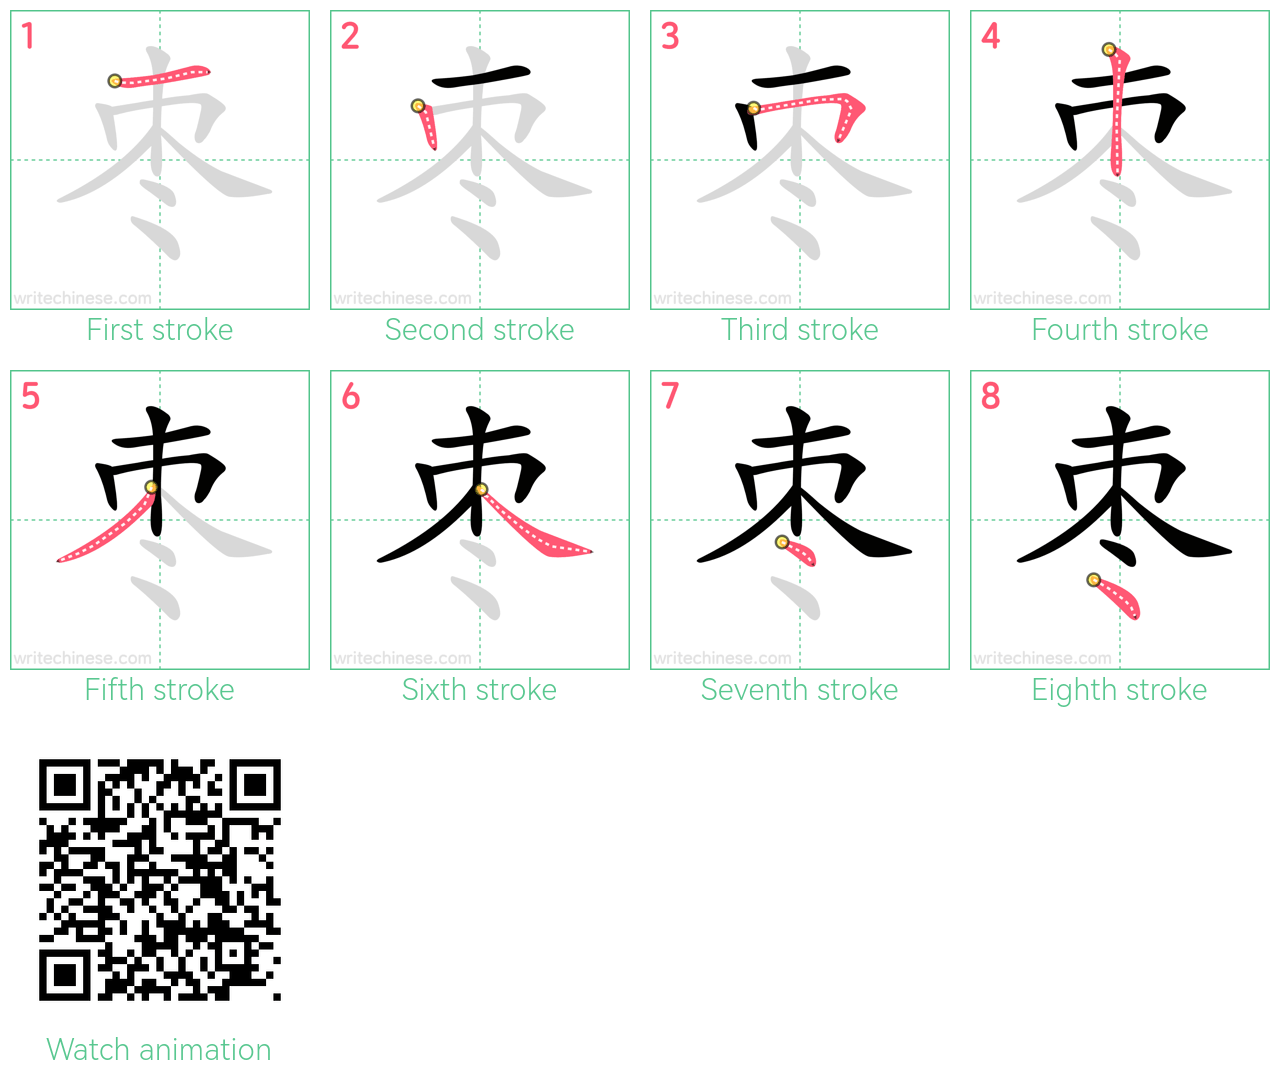 枣 step-by-step stroke order diagrams